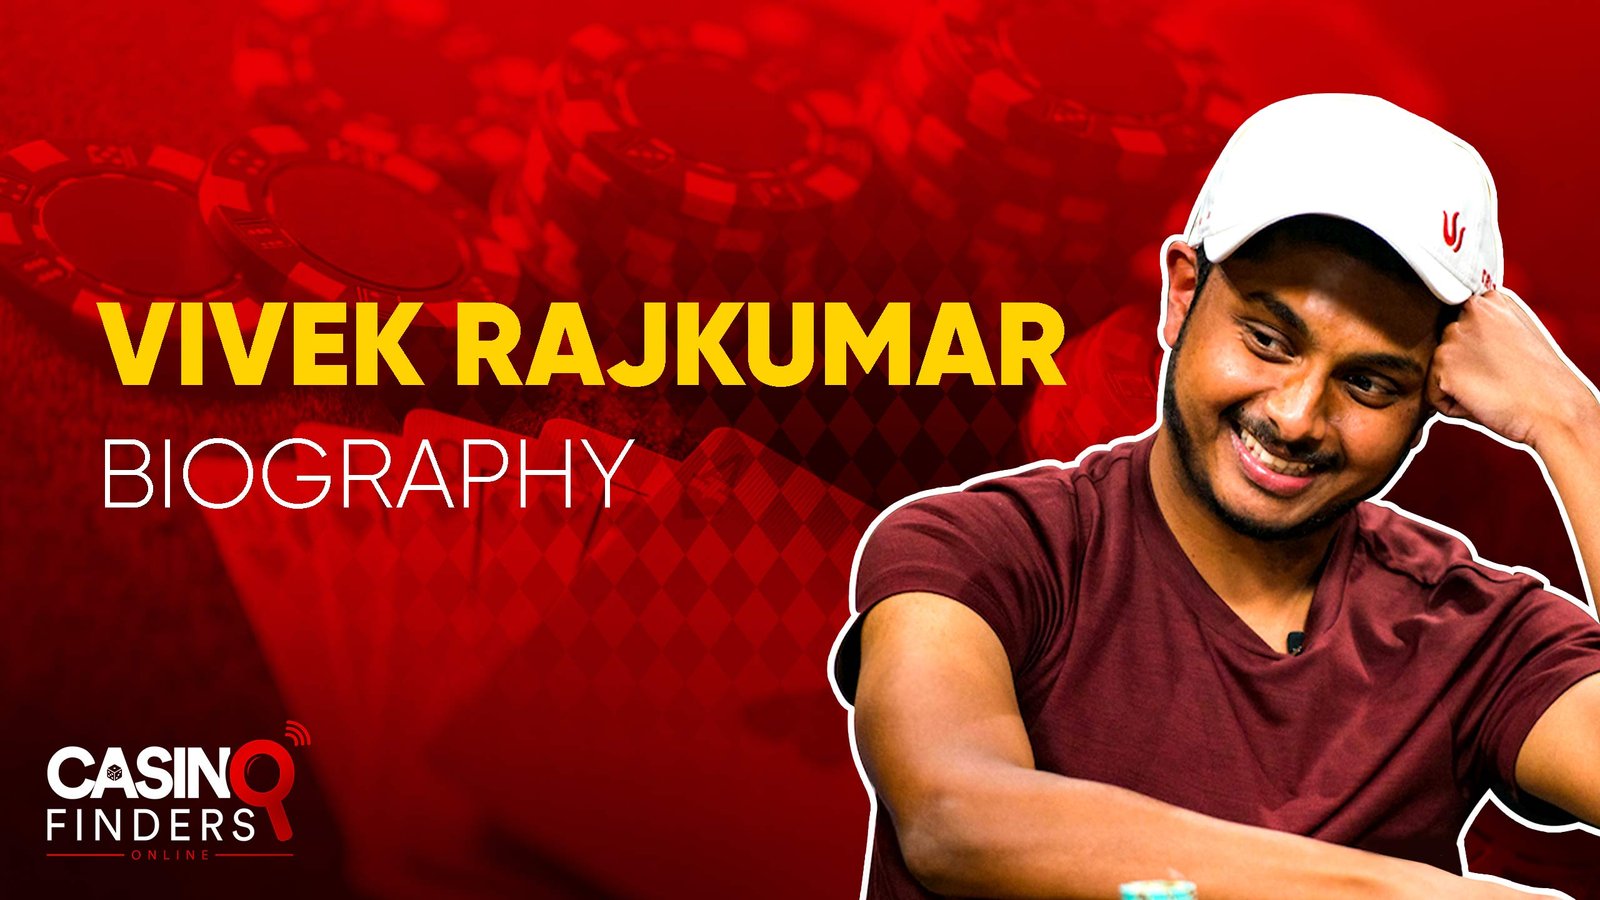 Vivek Rajkumar Poker Player Biography